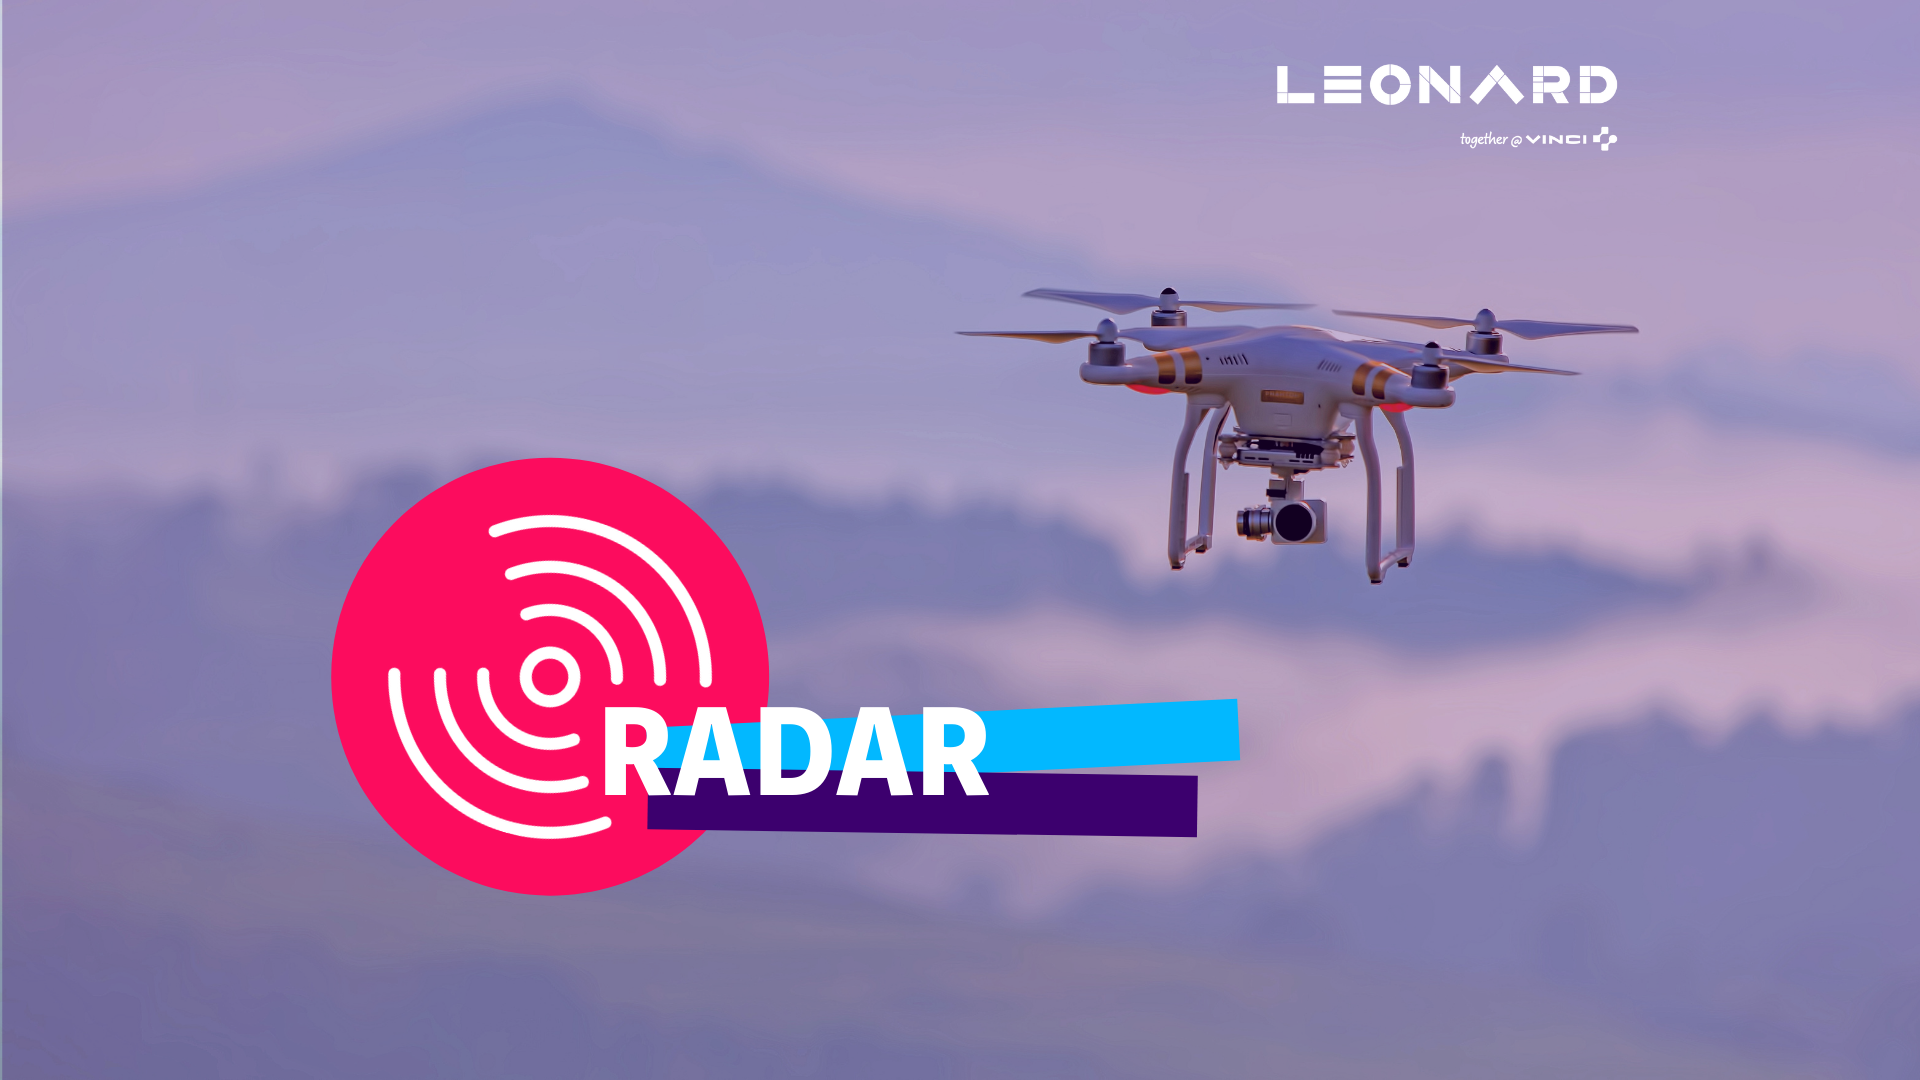 Radar – Notre sélection de business innovants #56